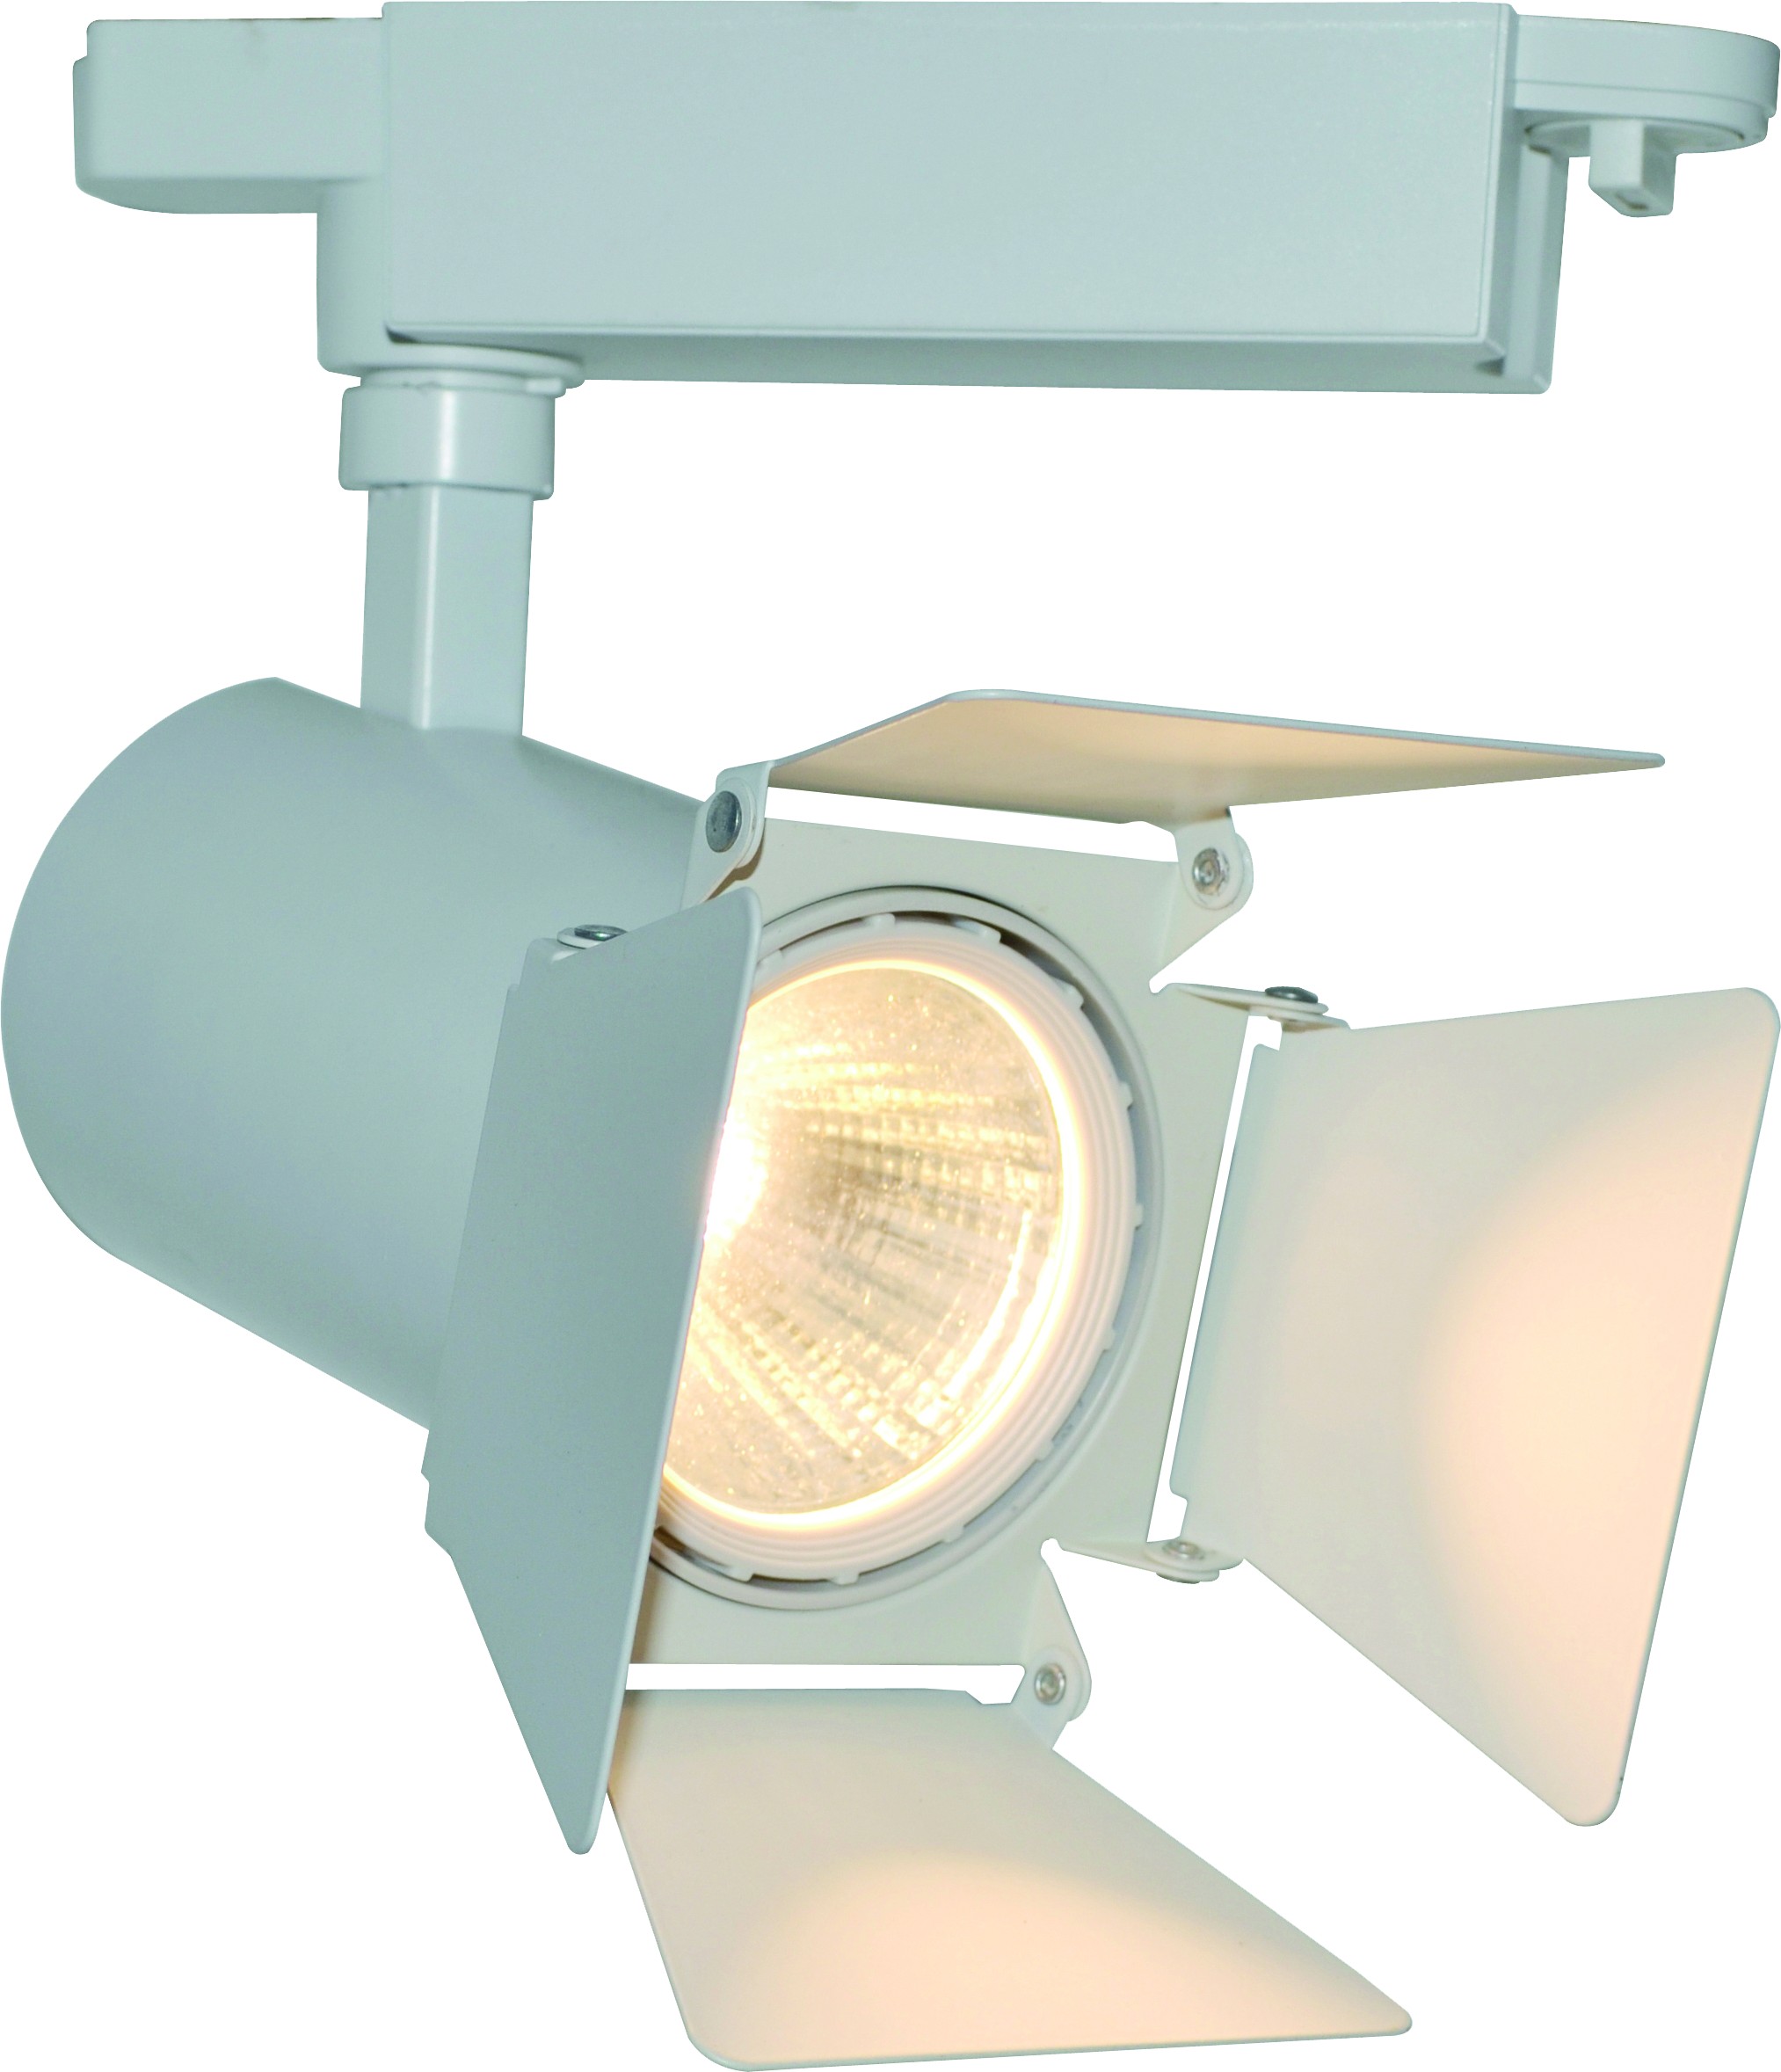 Прожектор потолочный. Трековый светодиодный светильник Arte Lamp track Lights a6709pl-1wh. Arte Lamp - a6709pl-1wh. A1906pl-1wh Almach трековый светильник. Arte Lamp - a6720pl-1wh.